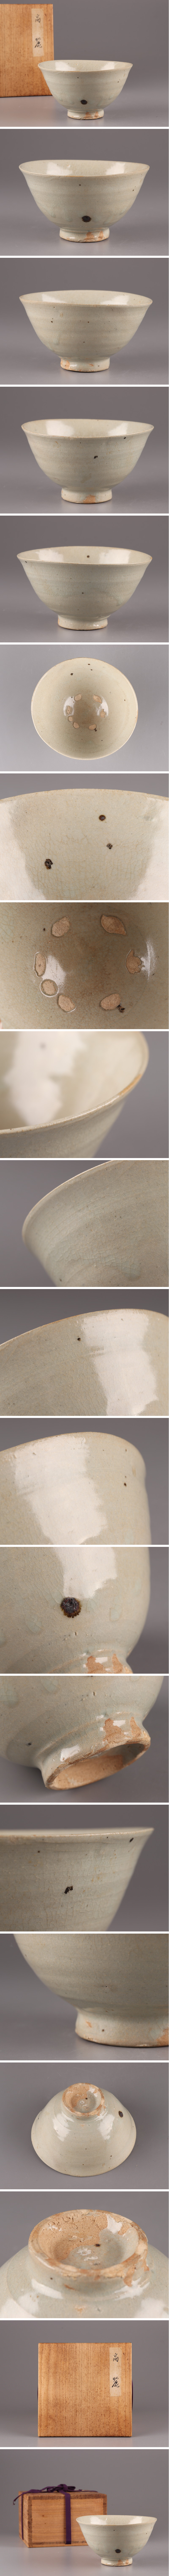 販売卸値古美術 朝鮮古陶磁器 李朝 高麗青磁 茶碗 時代物 極上品 初だし品 4026 高麗